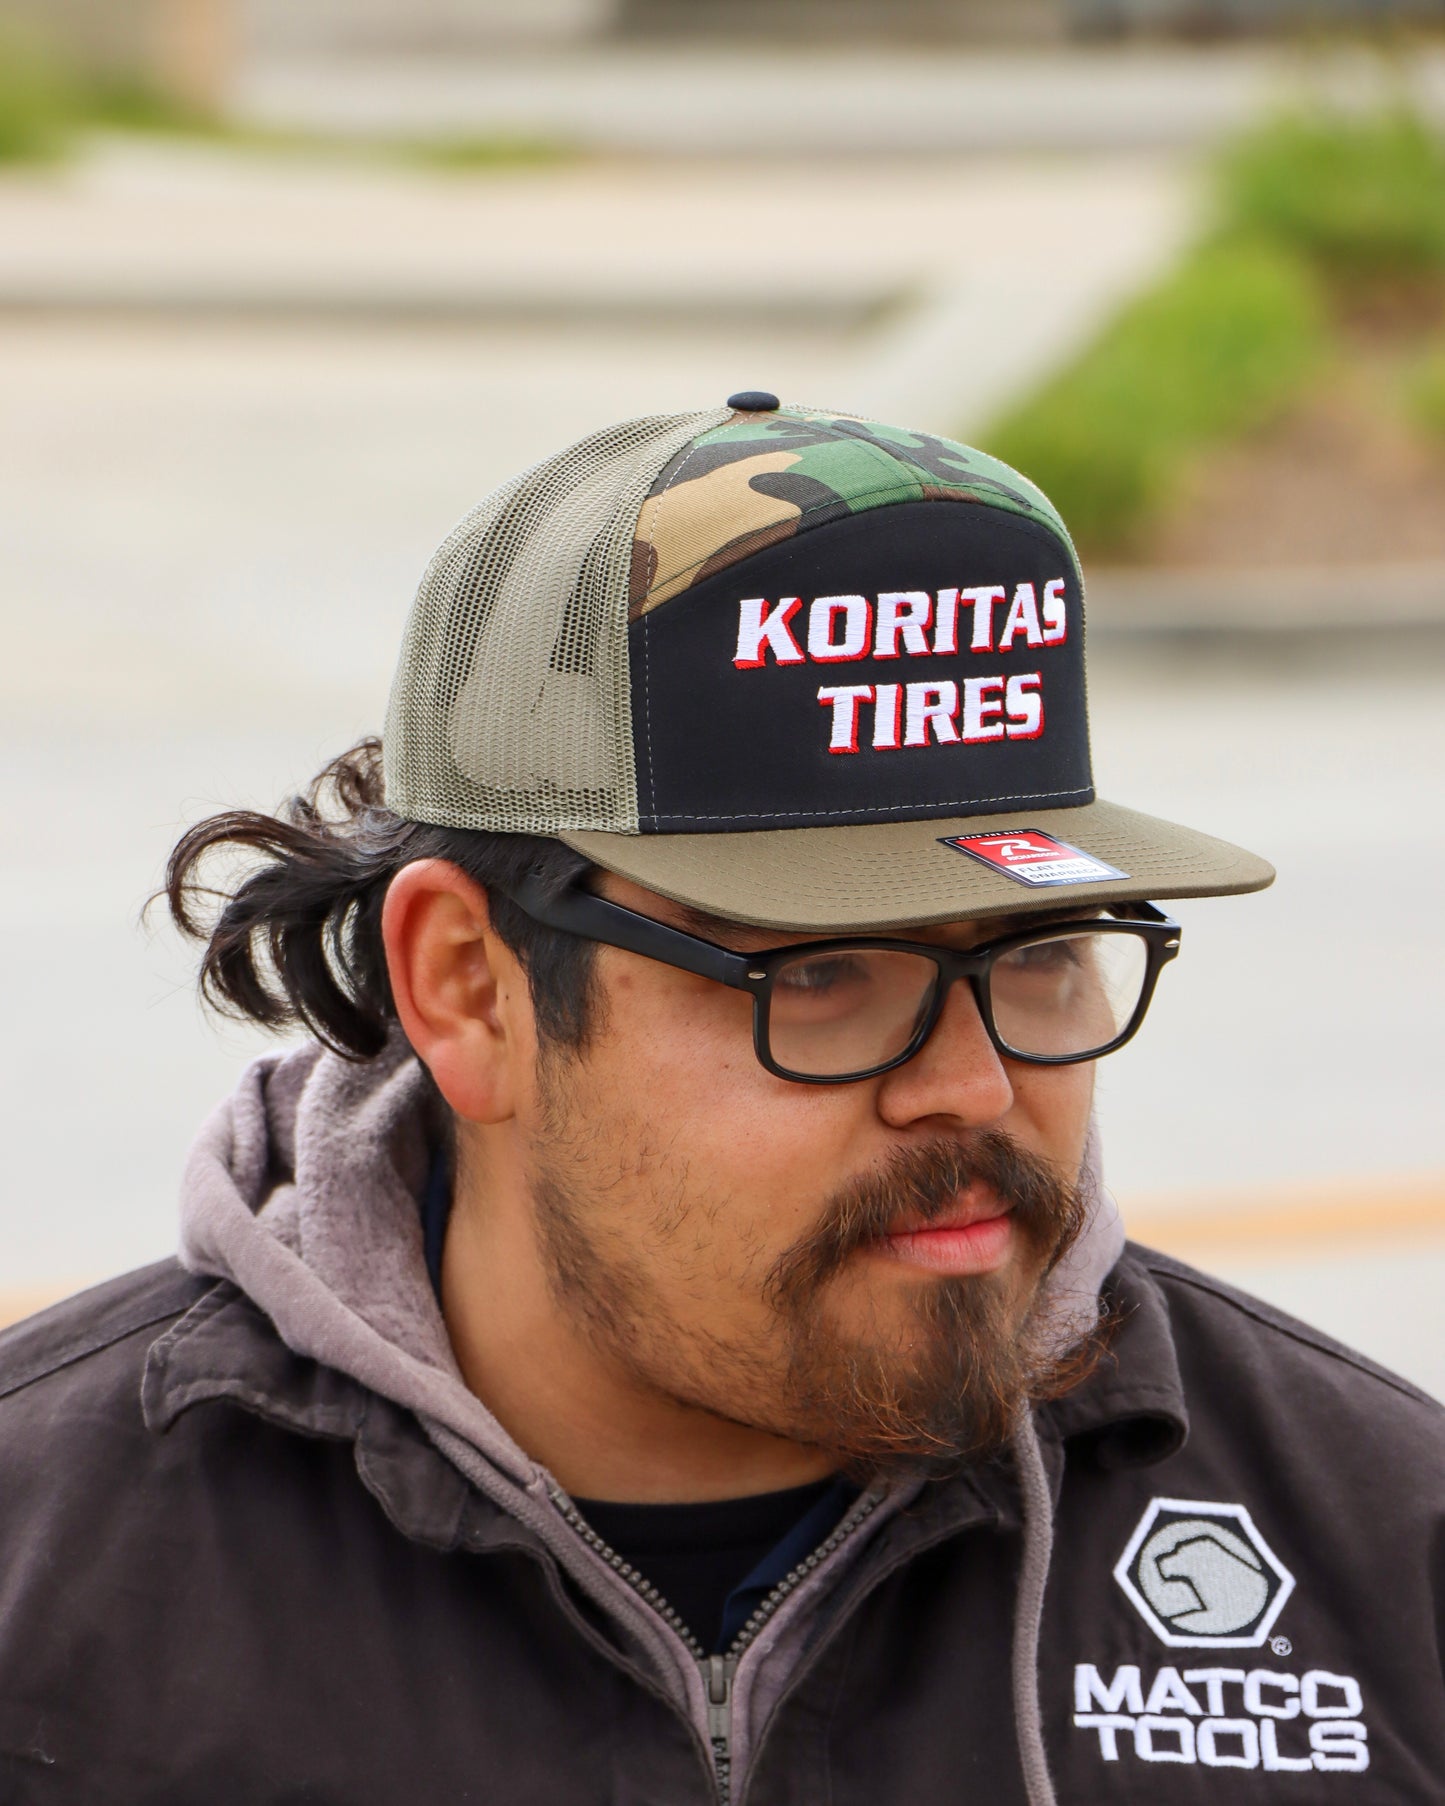 Model wearing the koritas tires 7 panel trucker hat.